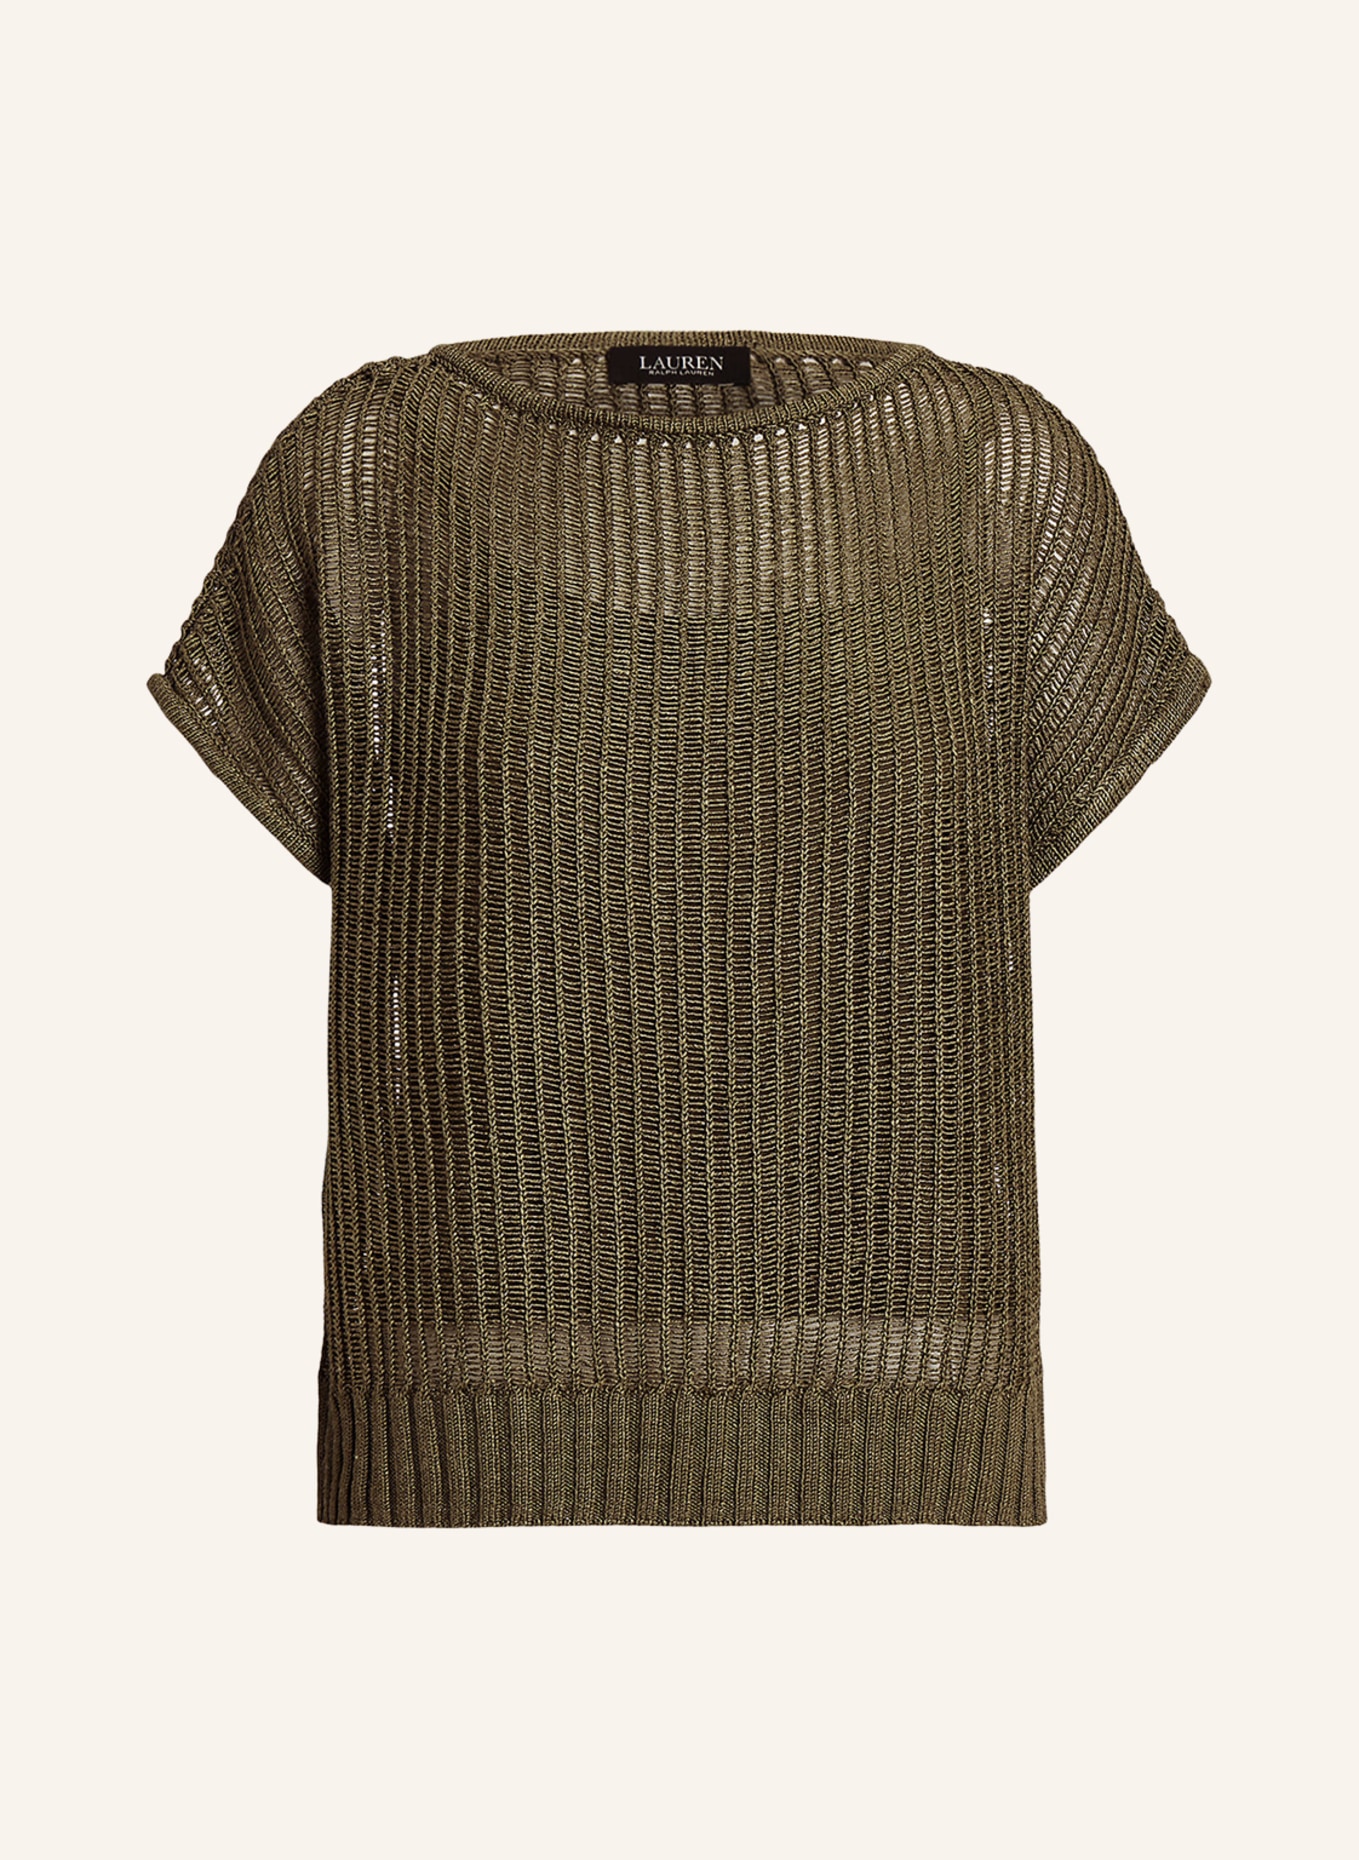 LAUREN RALPH LAUREN Strickshirt, Farbe: OLIV (Bild 1)